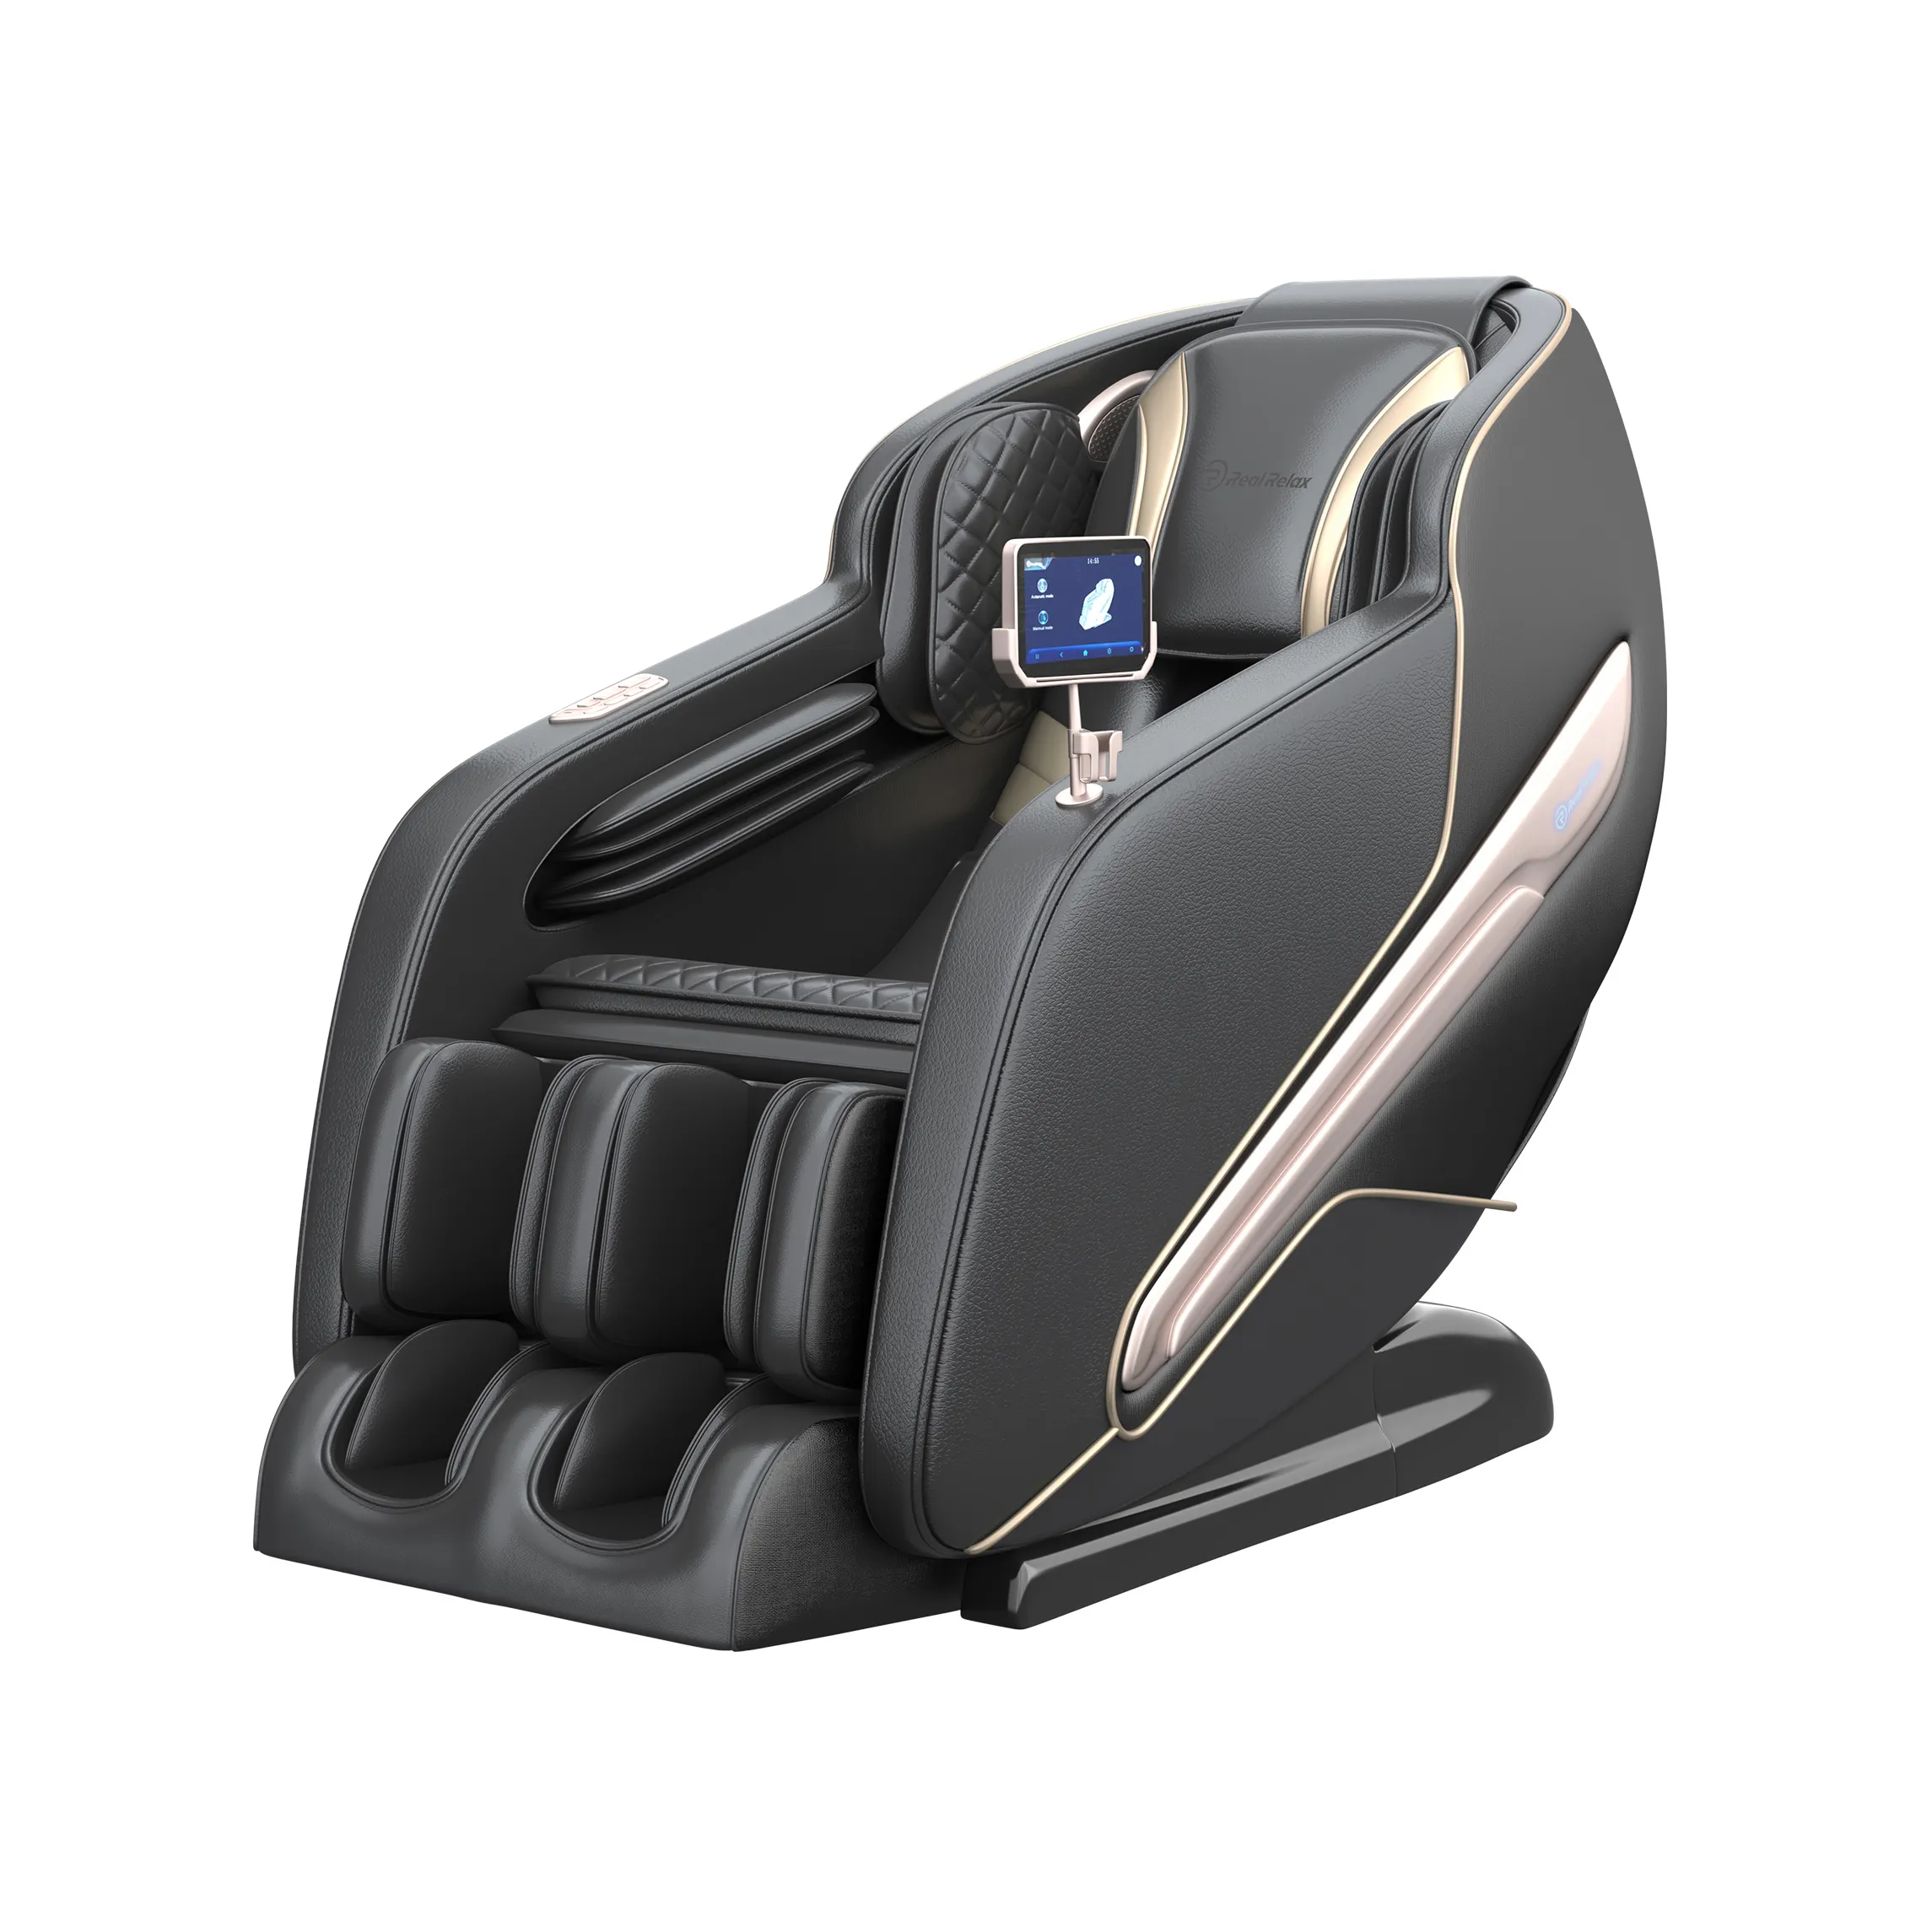 Real Relax PS6000 черная спинка SL Track Economy 4D невесомость роскошное массажное кресло с контролем времени для применения на теле